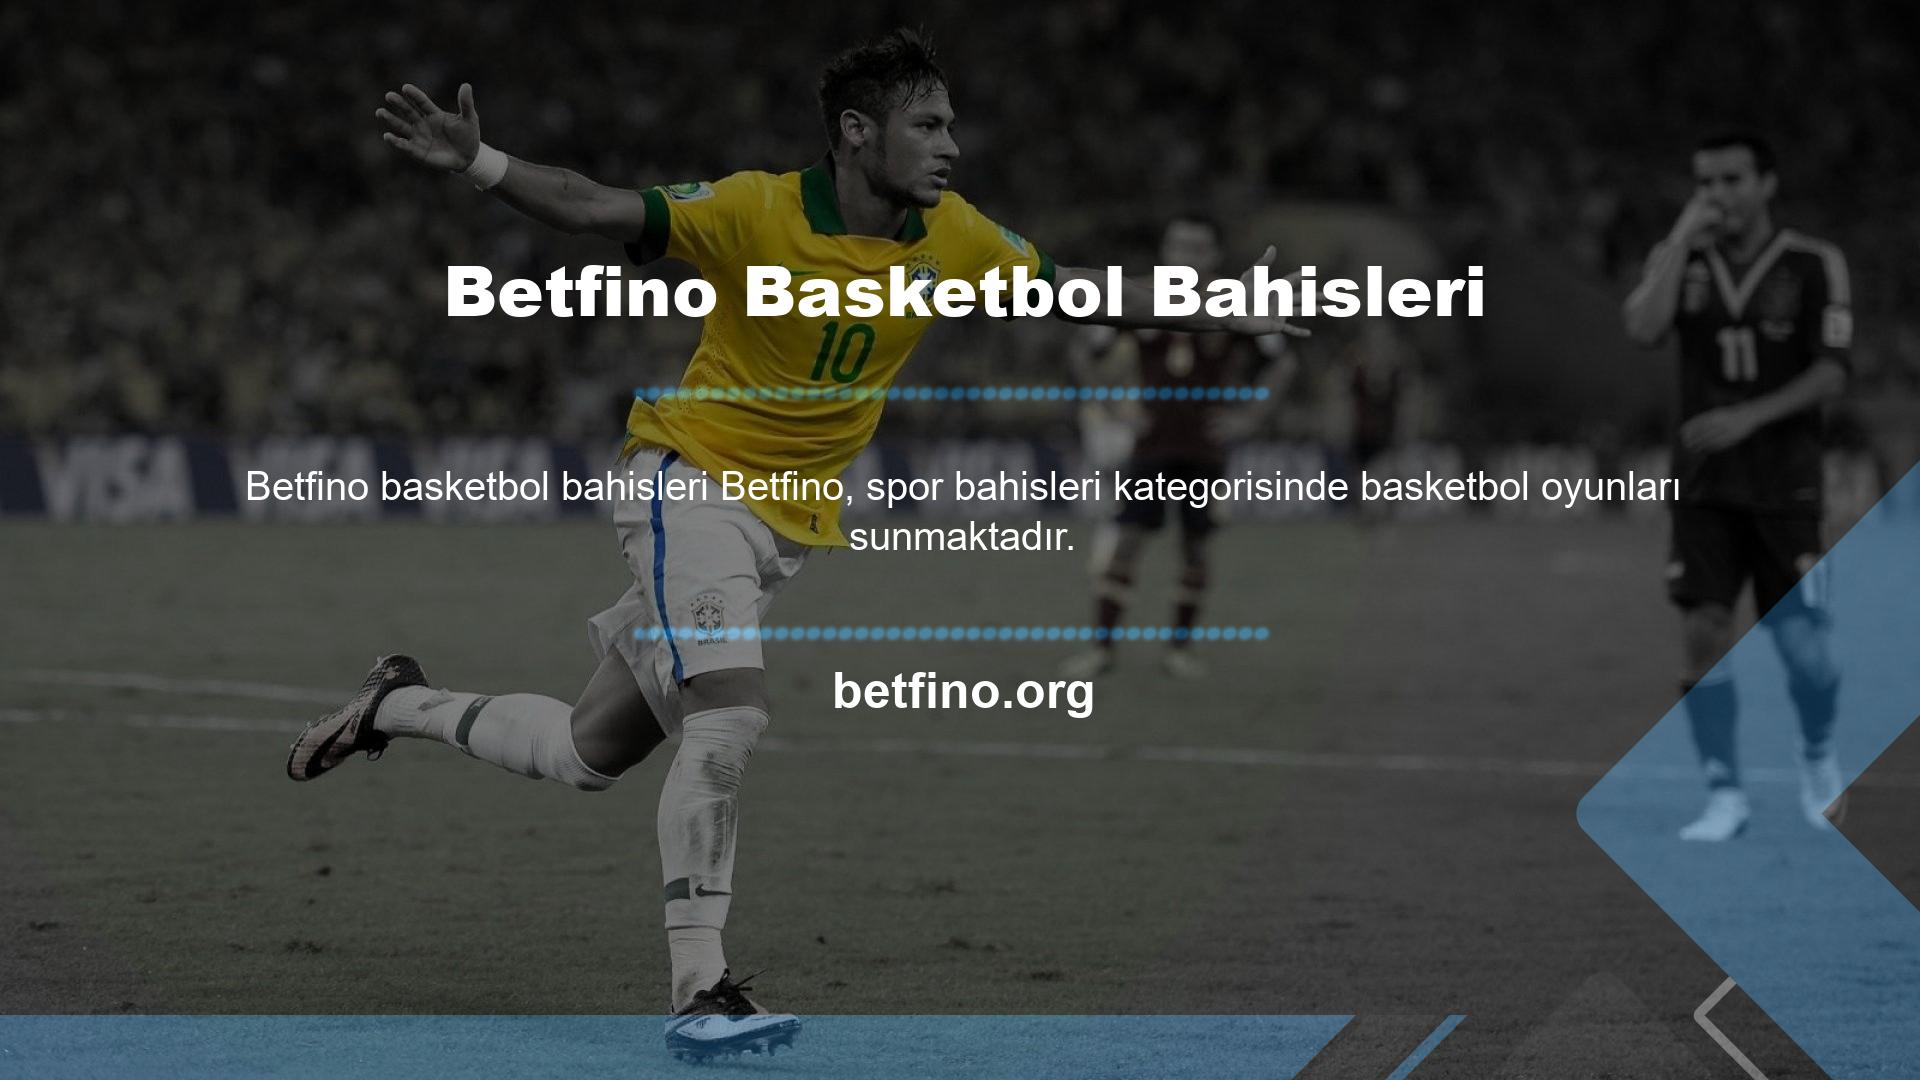 Güncel maçlar listesini açmak için Spor sayfasındaki Basketbol bölümüne tıklayın ve bizi web sitemizden takip edin